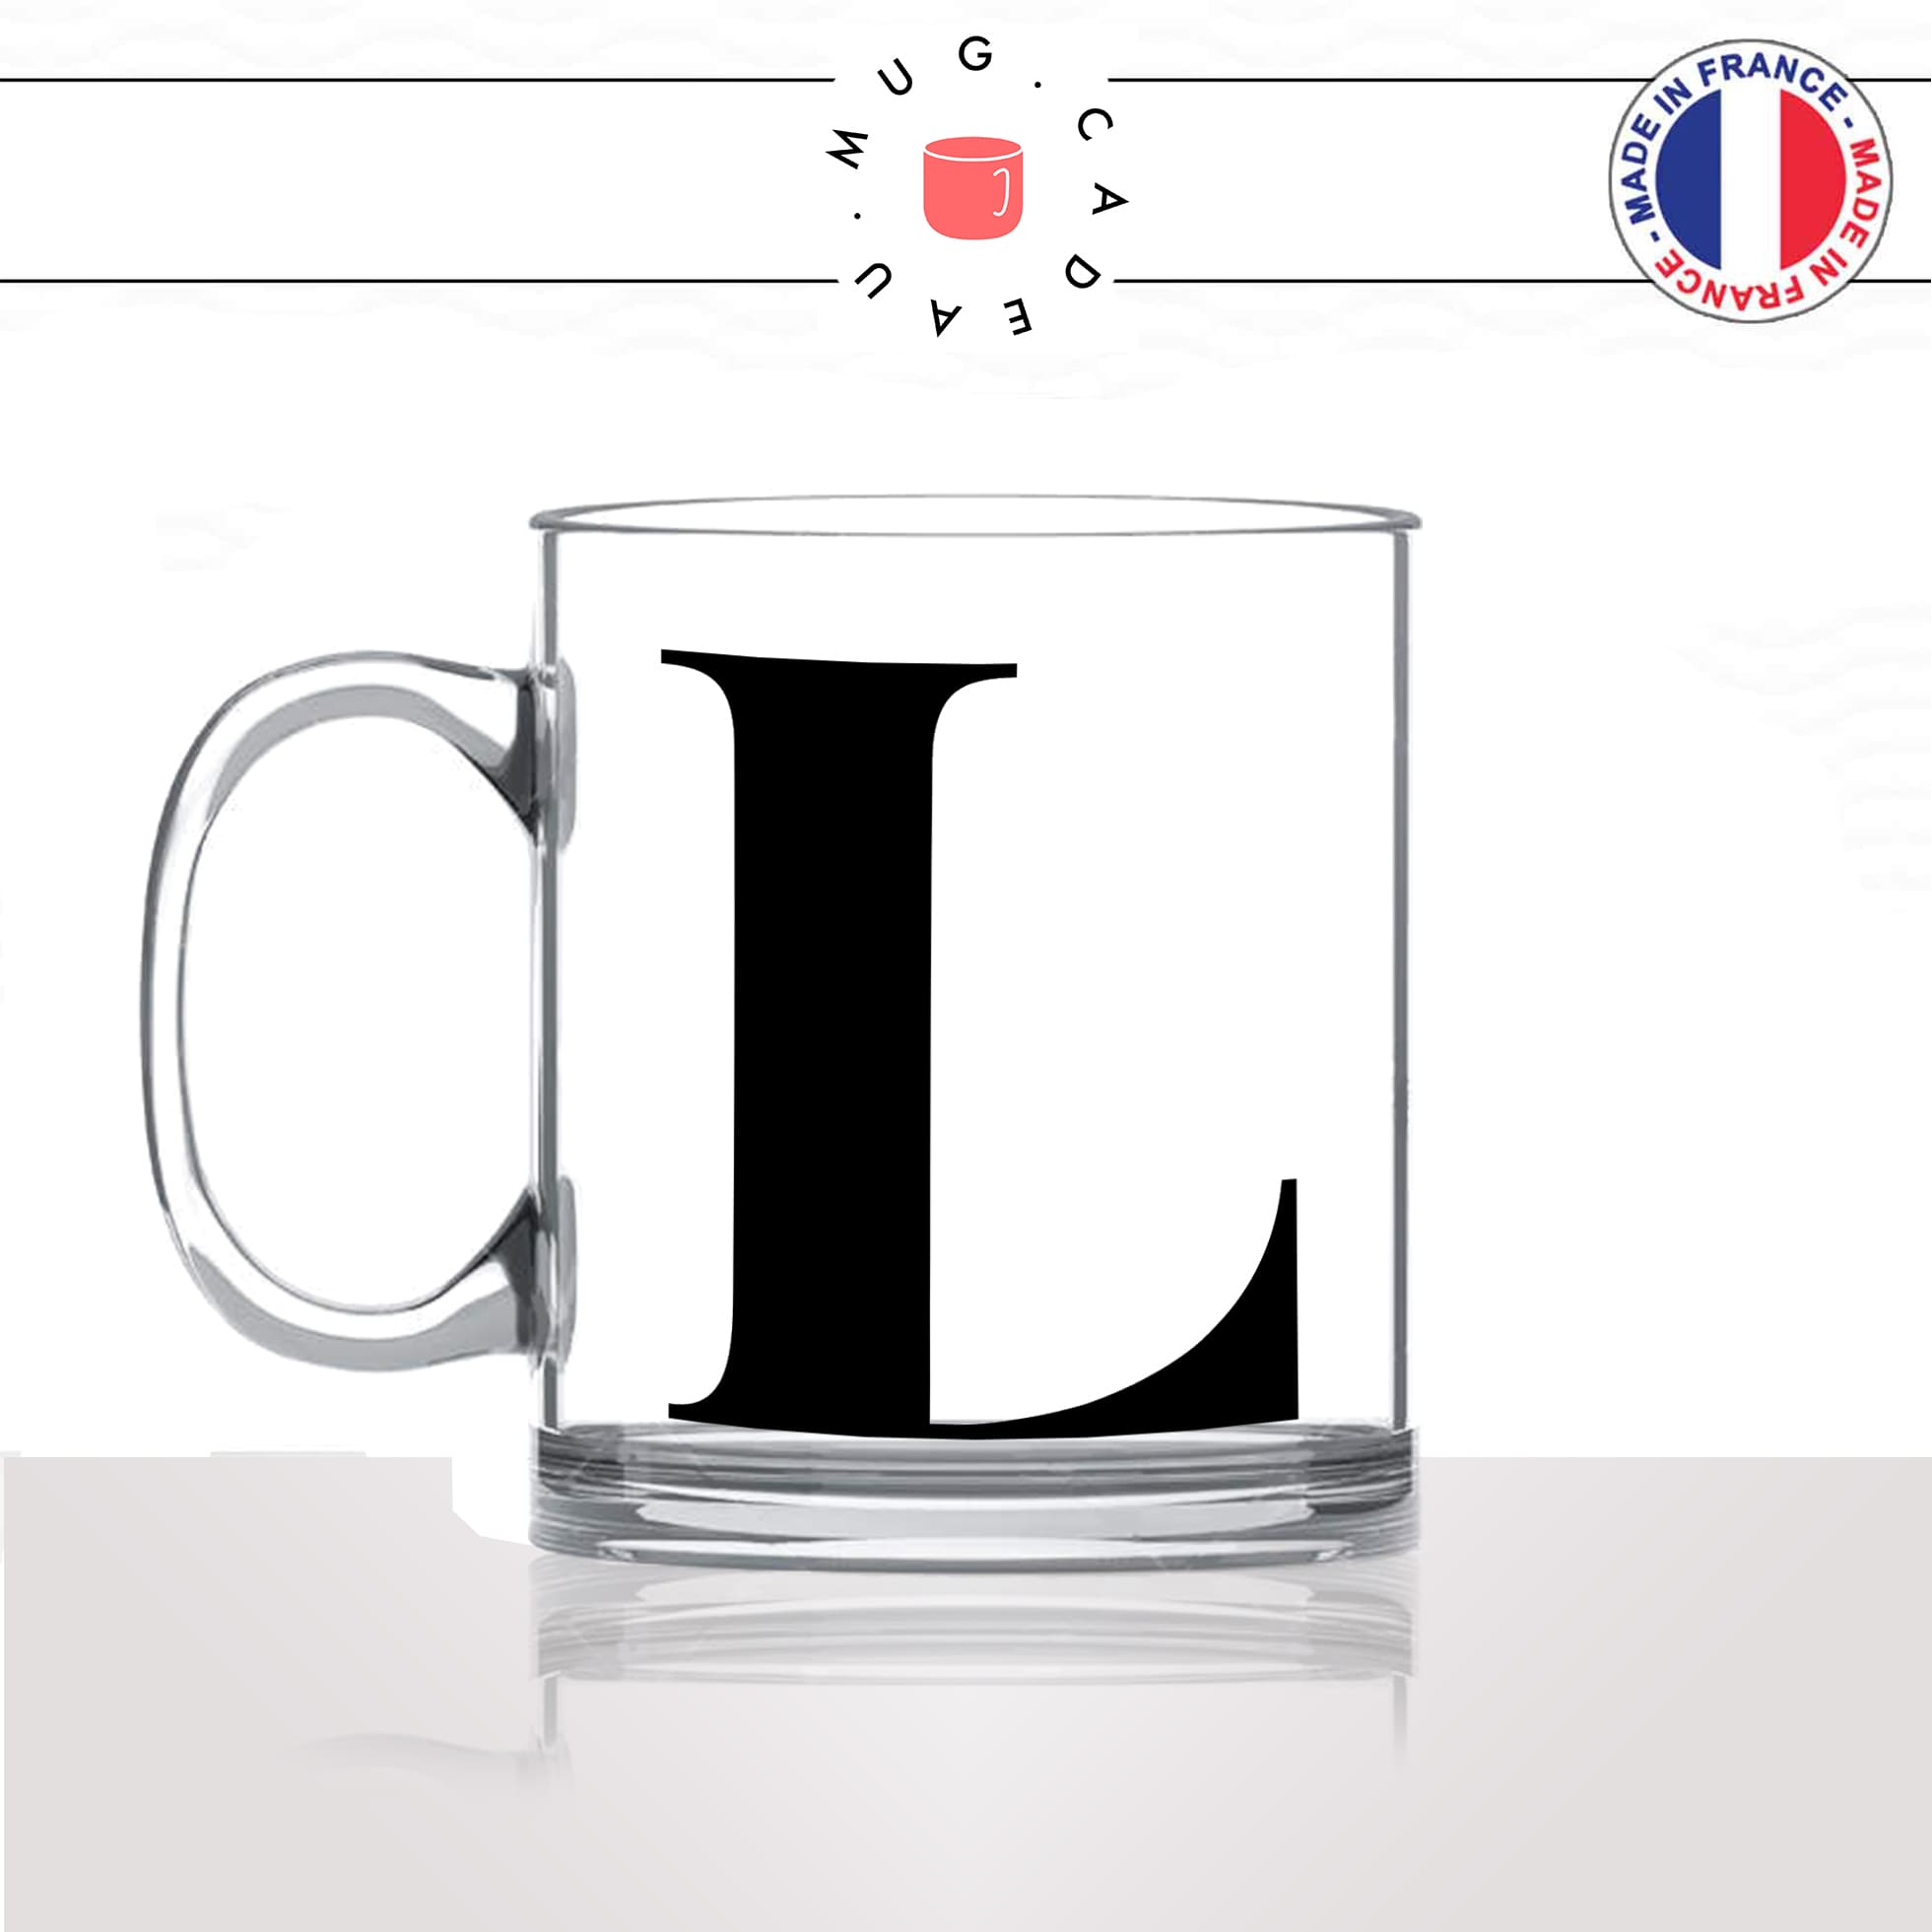 mug-tasse-en-verre-transparent-glass-initiale-L-léa-laurie-laurence-liliane-laura-prenom-lettre-collegue-original-idée-cadeau-fun-cool-café-thé